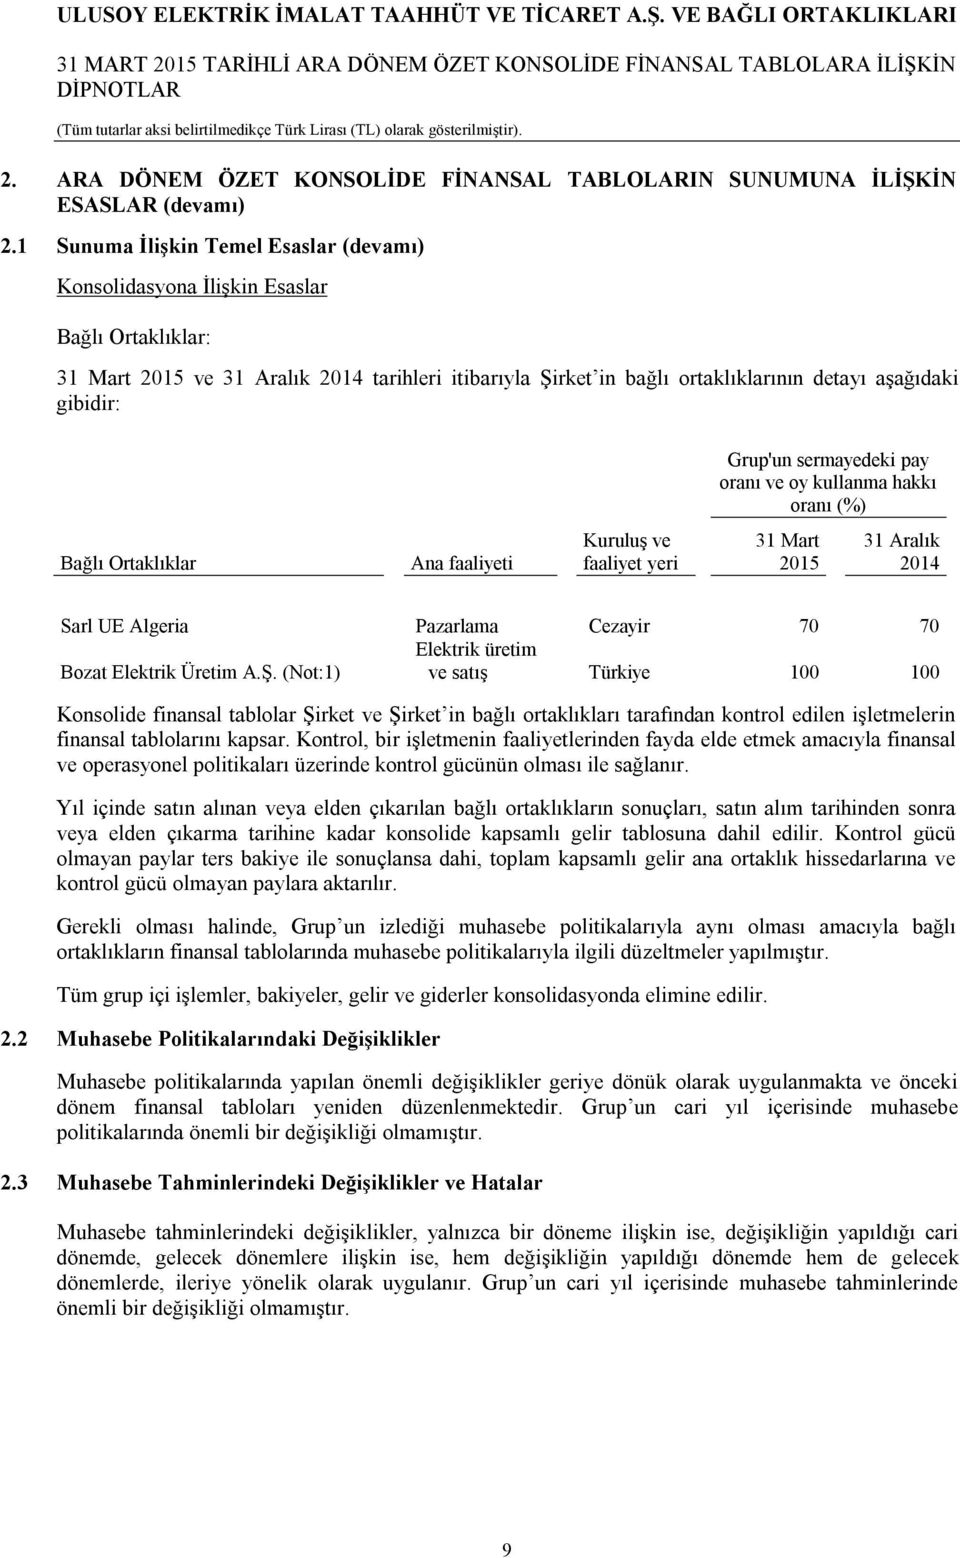 Grup'un sermayedeki pay oranı ve oy kullanma hakkı oranı (%) Bağlı Ortaklıklar Ana faaliyeti Kuruluş ve faaliyet yeri 31 Mart 2015 31 Aralık 2014 Sarl UE Algeria Pazarlama Cezayir 70 70 Elektrik